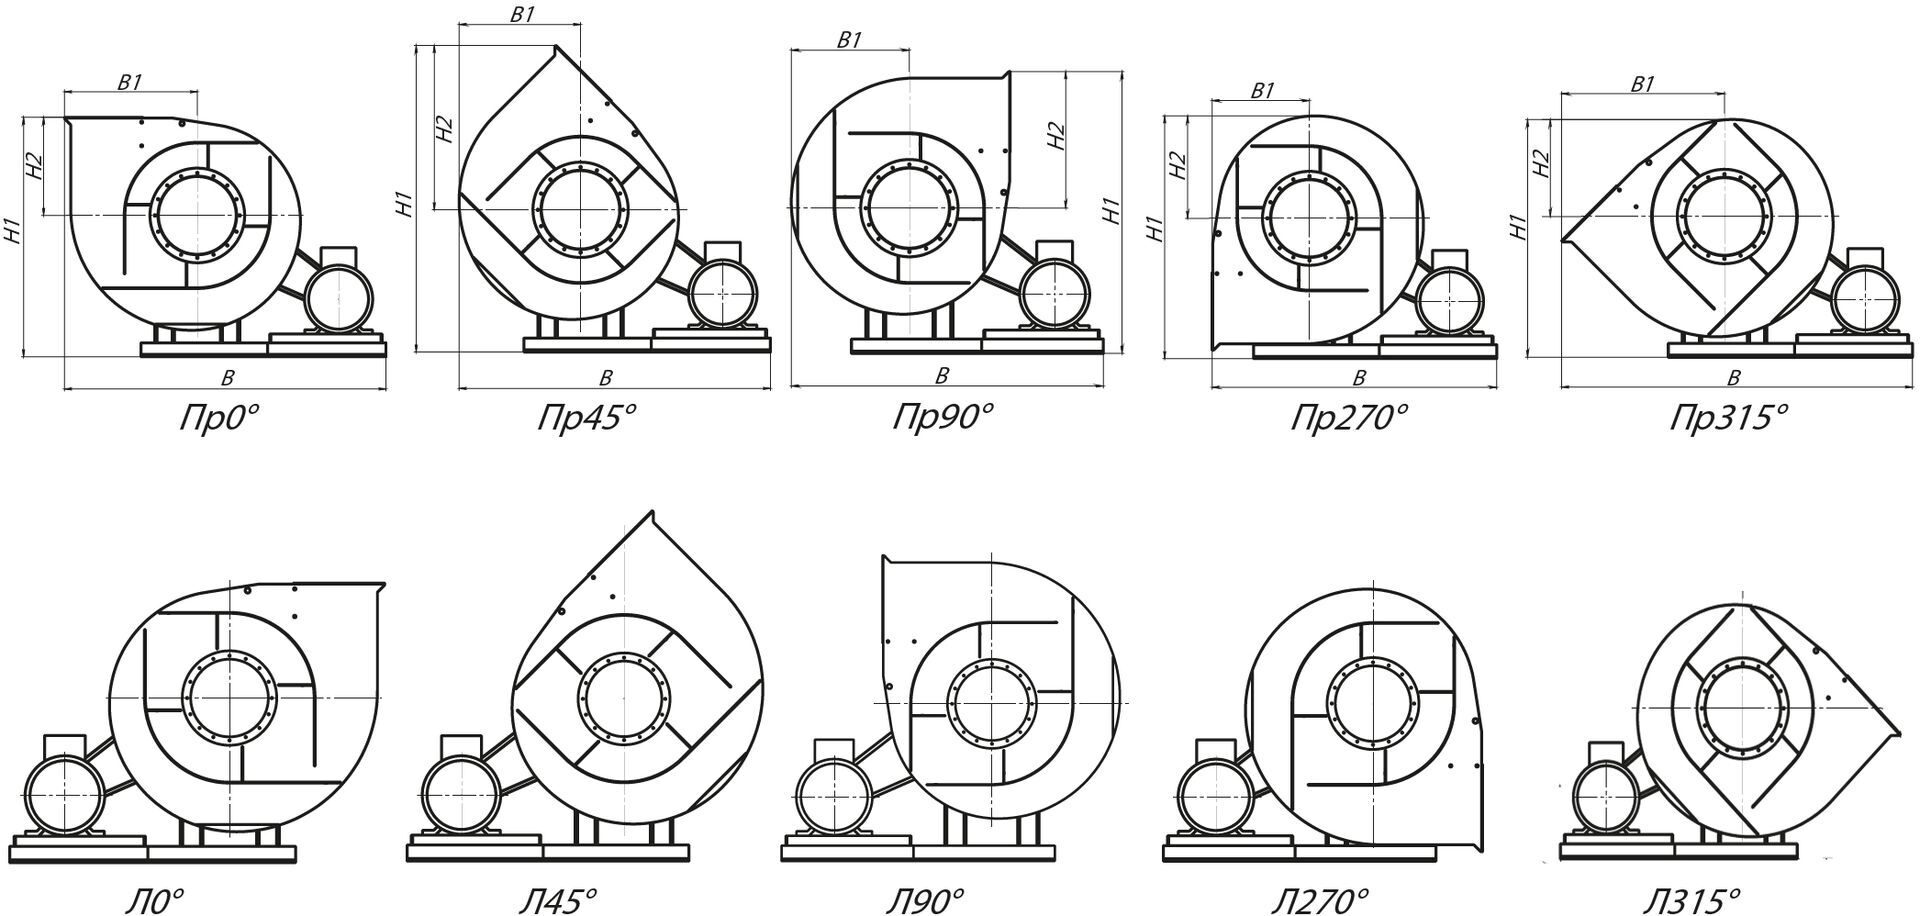 Стандартные варианты углов поворота корпуса вентиляторов ВРП 115-45-5 (№5) схема 5 (исполнение 5)